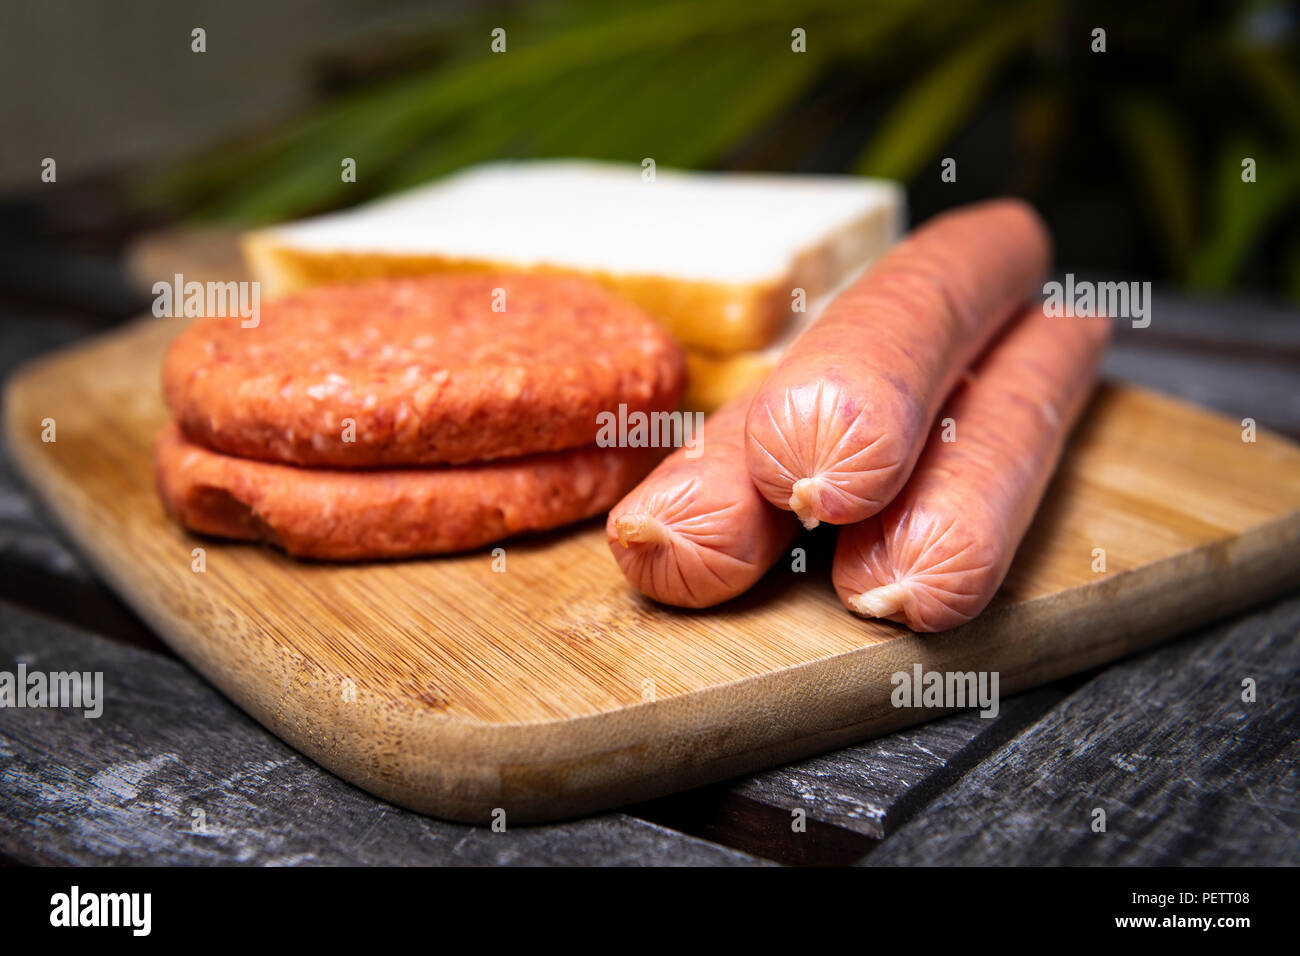 Saucisses barbecue non cuites fraîches, des hamburgers et du pain prêt à être grillé, sur la planche à découper en bois Banque D'Images